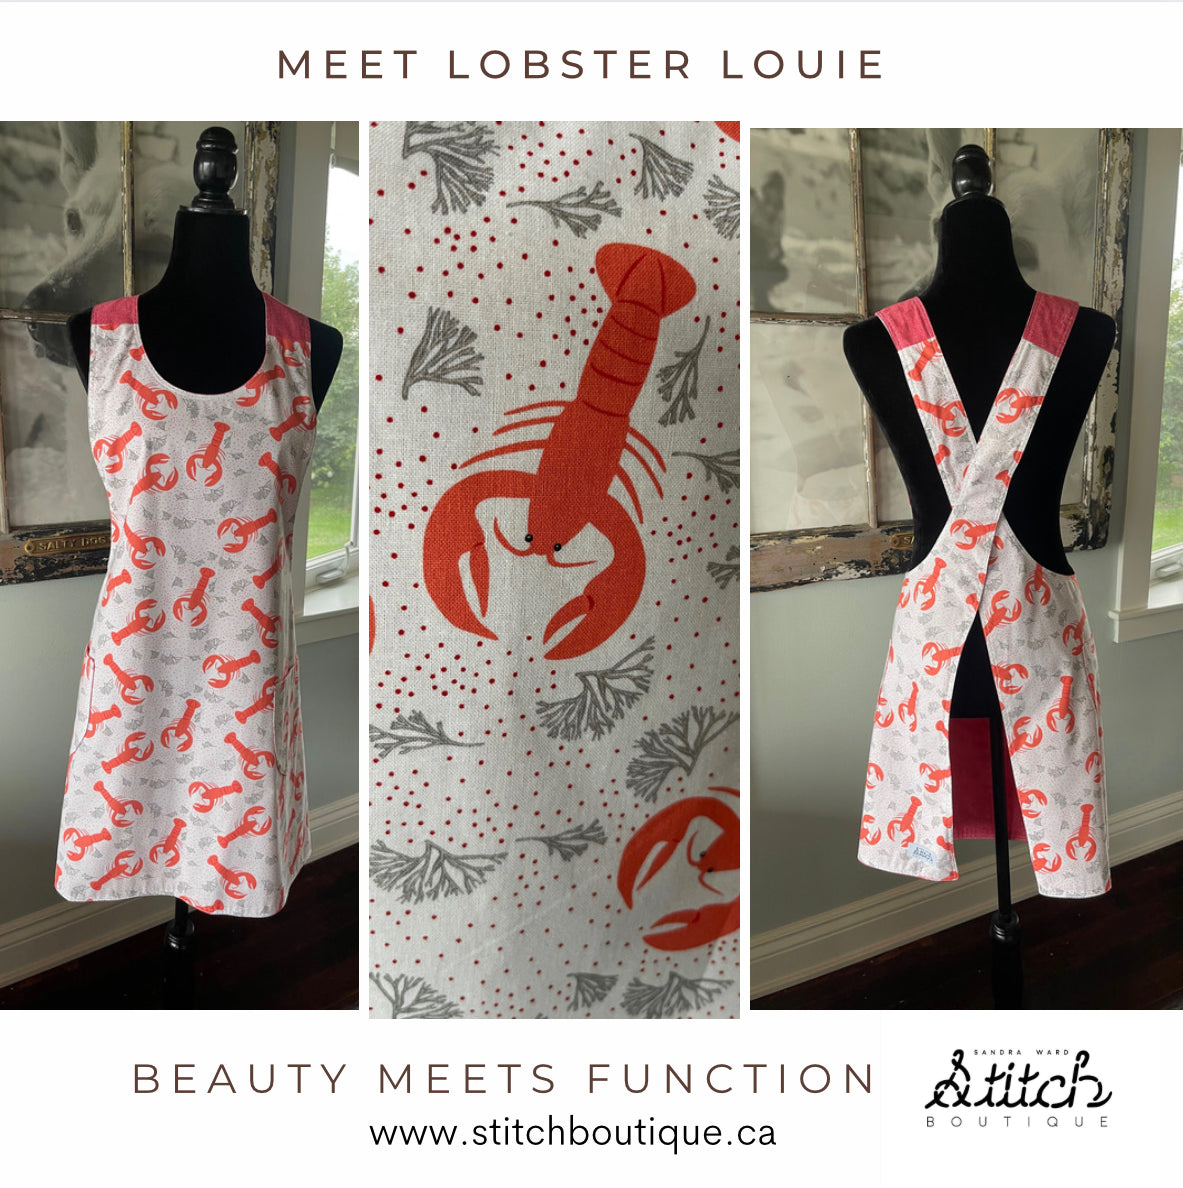 Lobster Louie